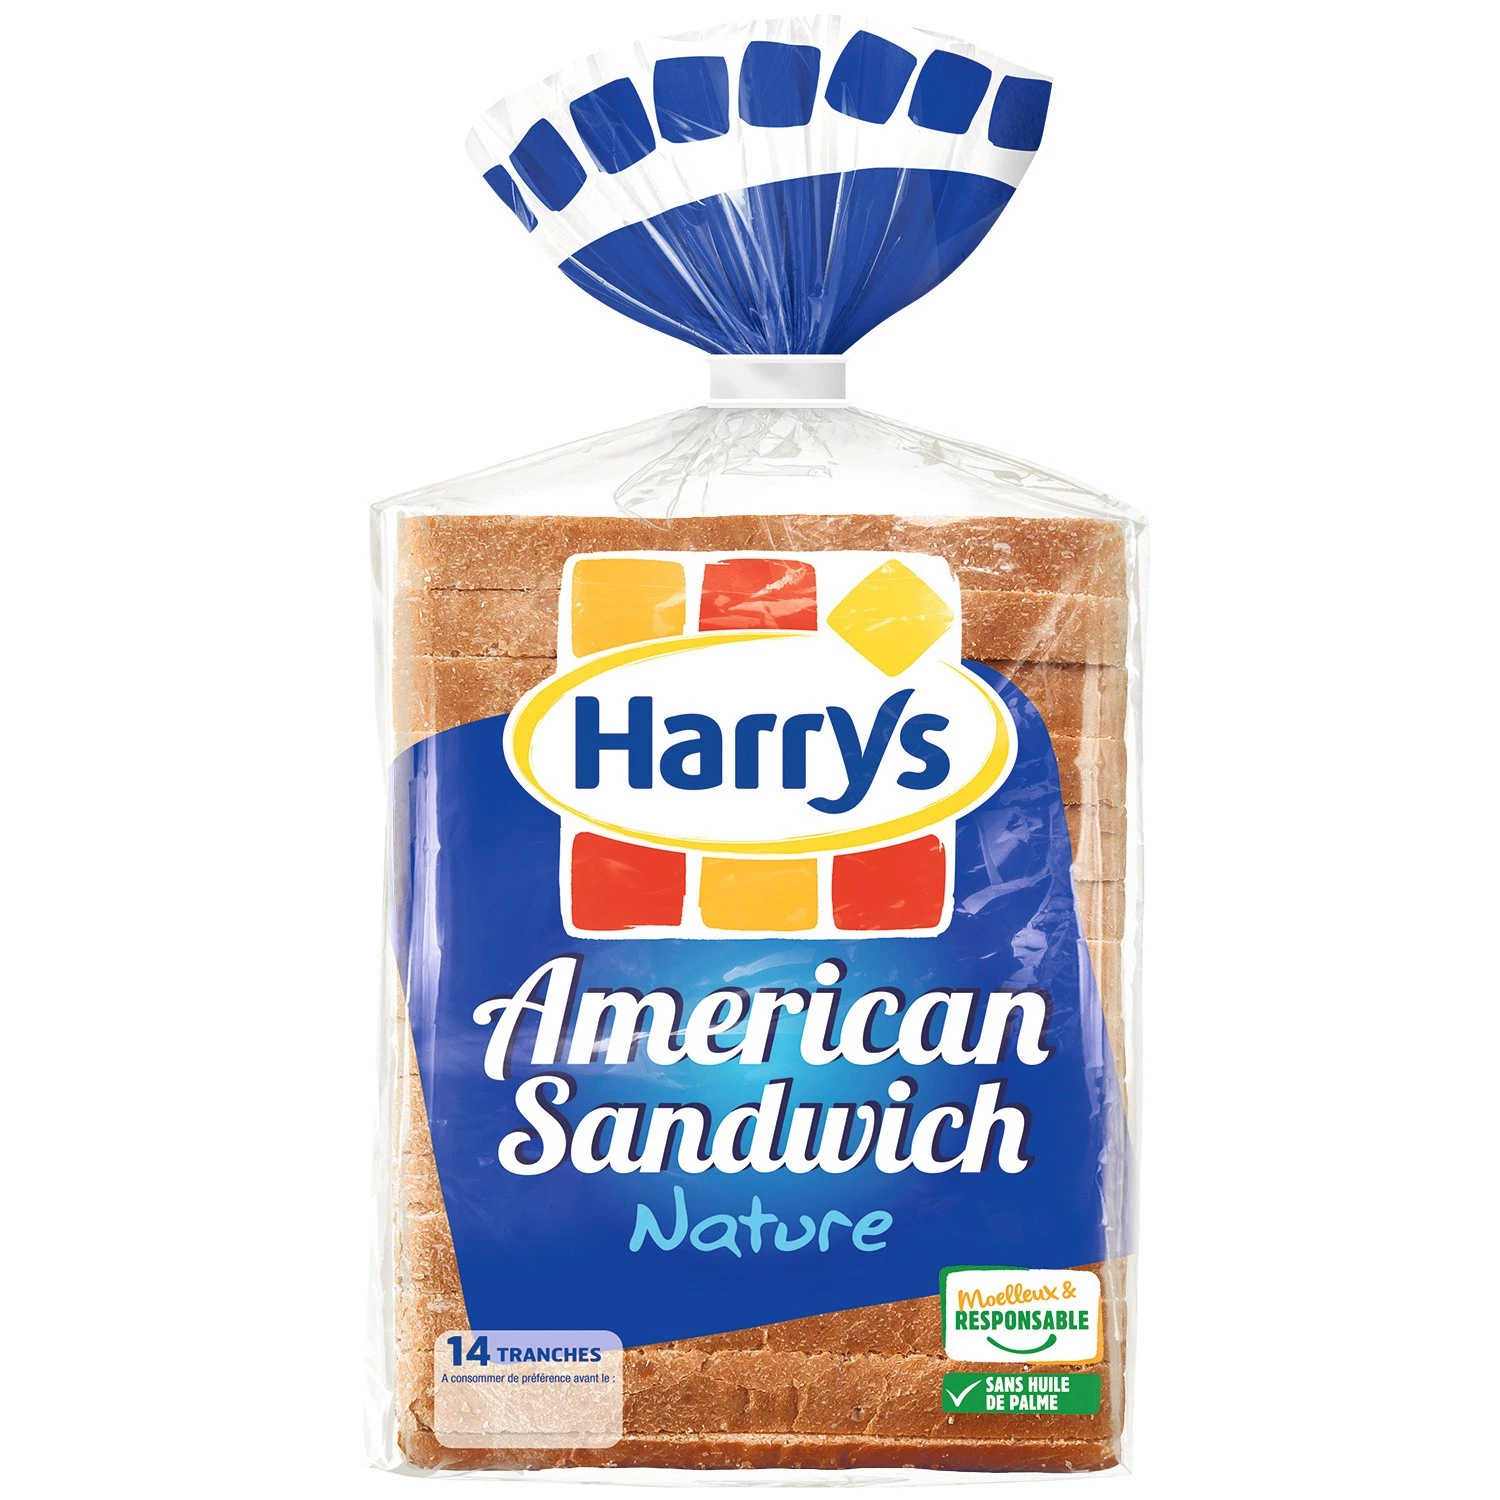 Pain de mie nature american sandwich x14 550g - HARRY'S